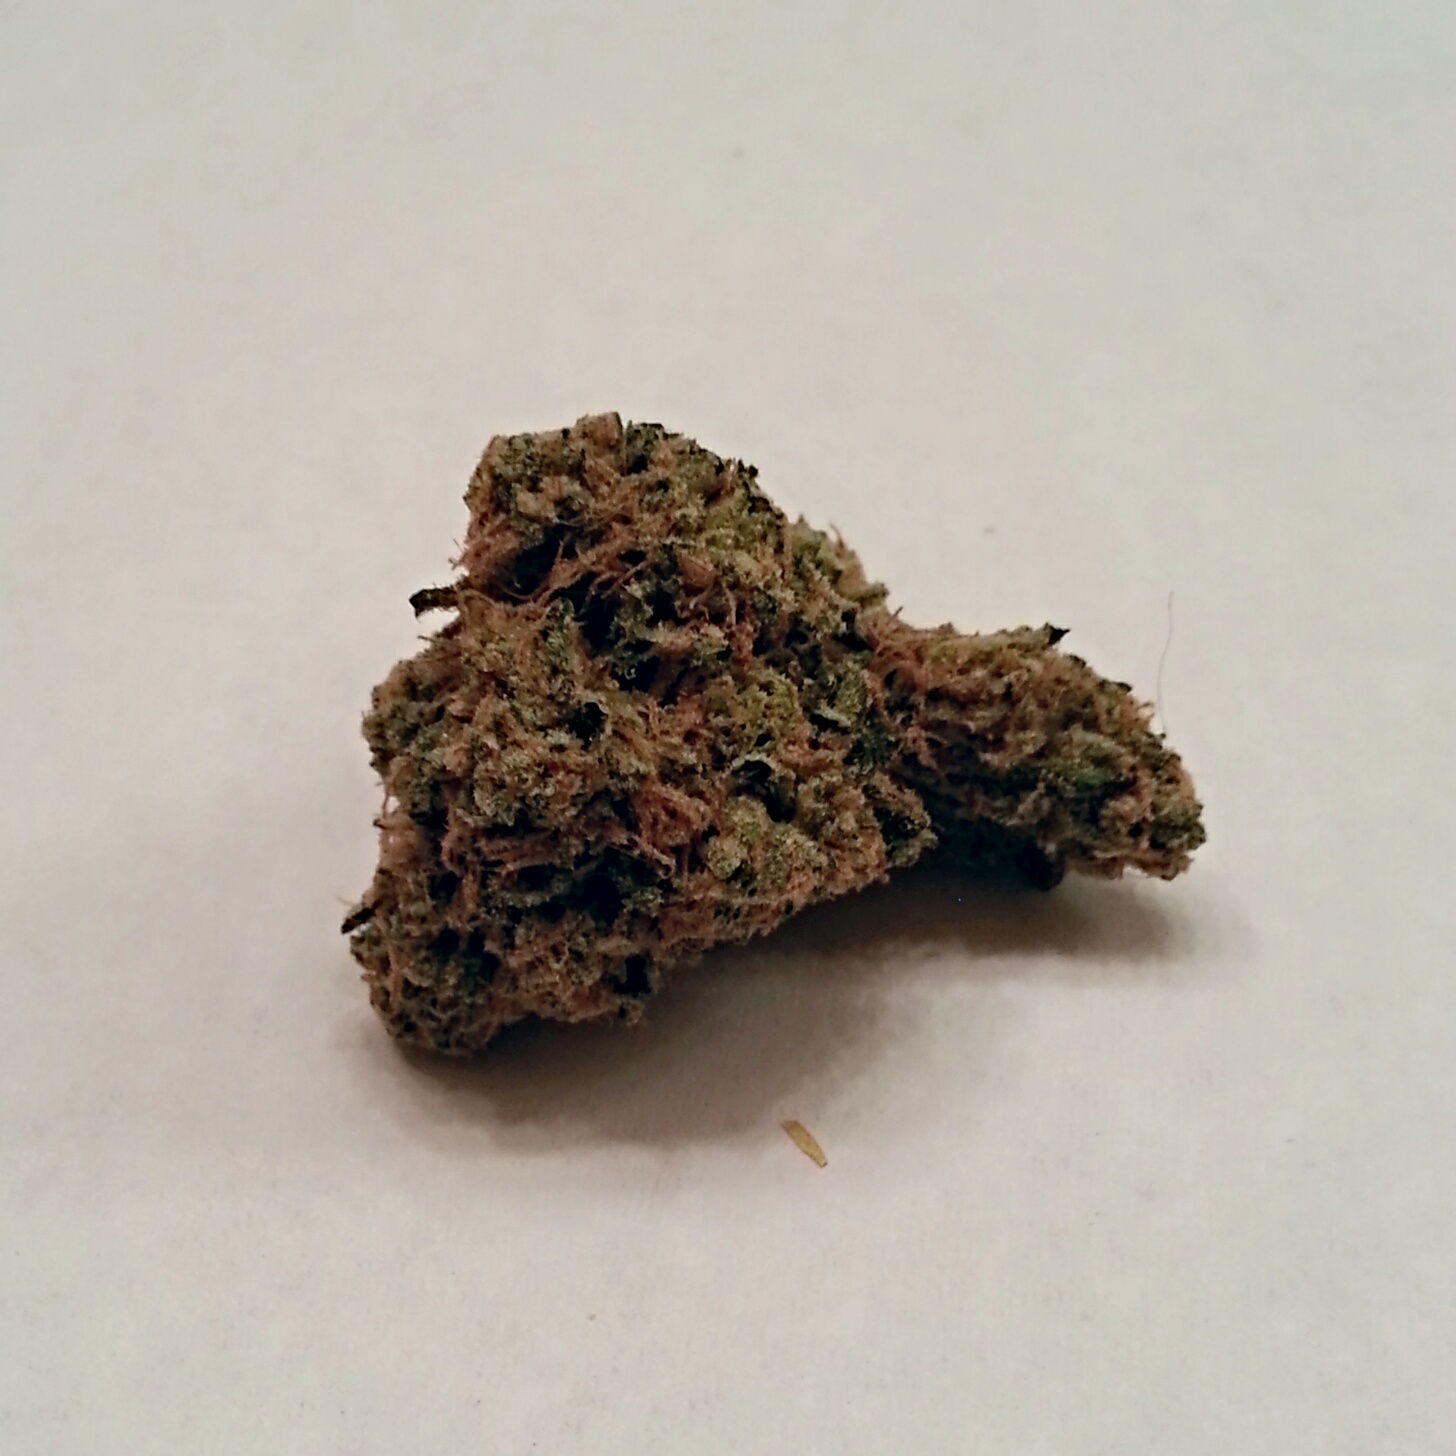 Lemon Puff from New Cannabis Republic Medical Marijuana Review